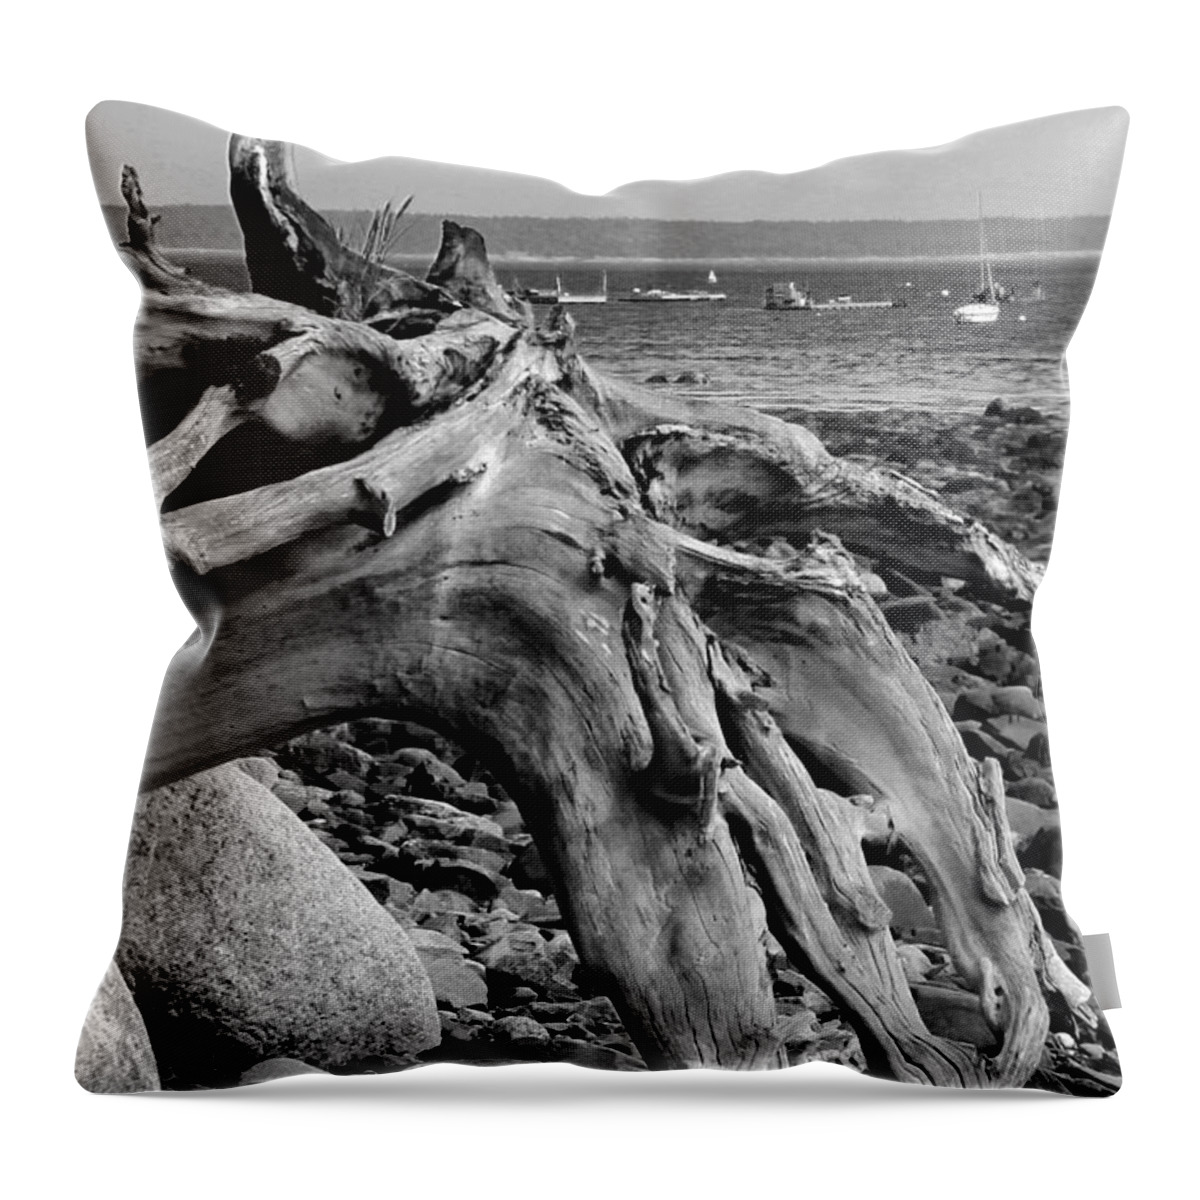 Driftwood On Rocky Beach Throw Pillow featuring the photograph Driftwood on Rocky Beach by Jemmy Archer